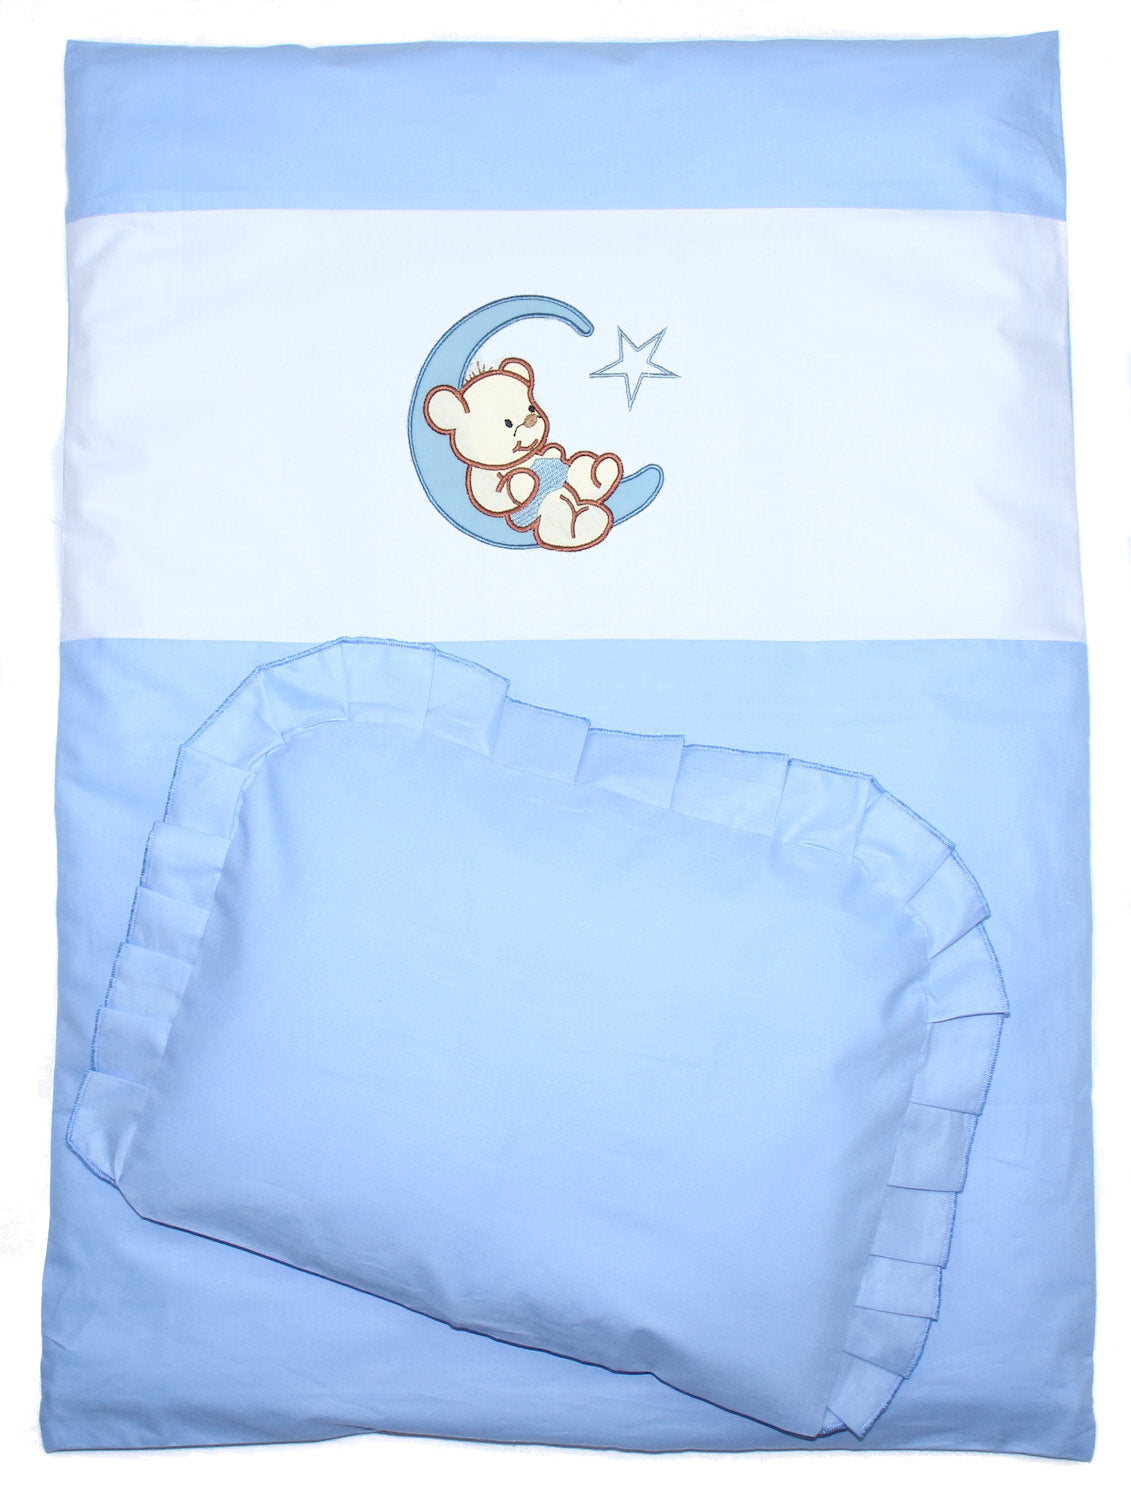 2- 4tlg Kinderwagenset - Bärchen Mond - Blau - Bettwäsche für Kinderwagen Bezüge Decke Kissen